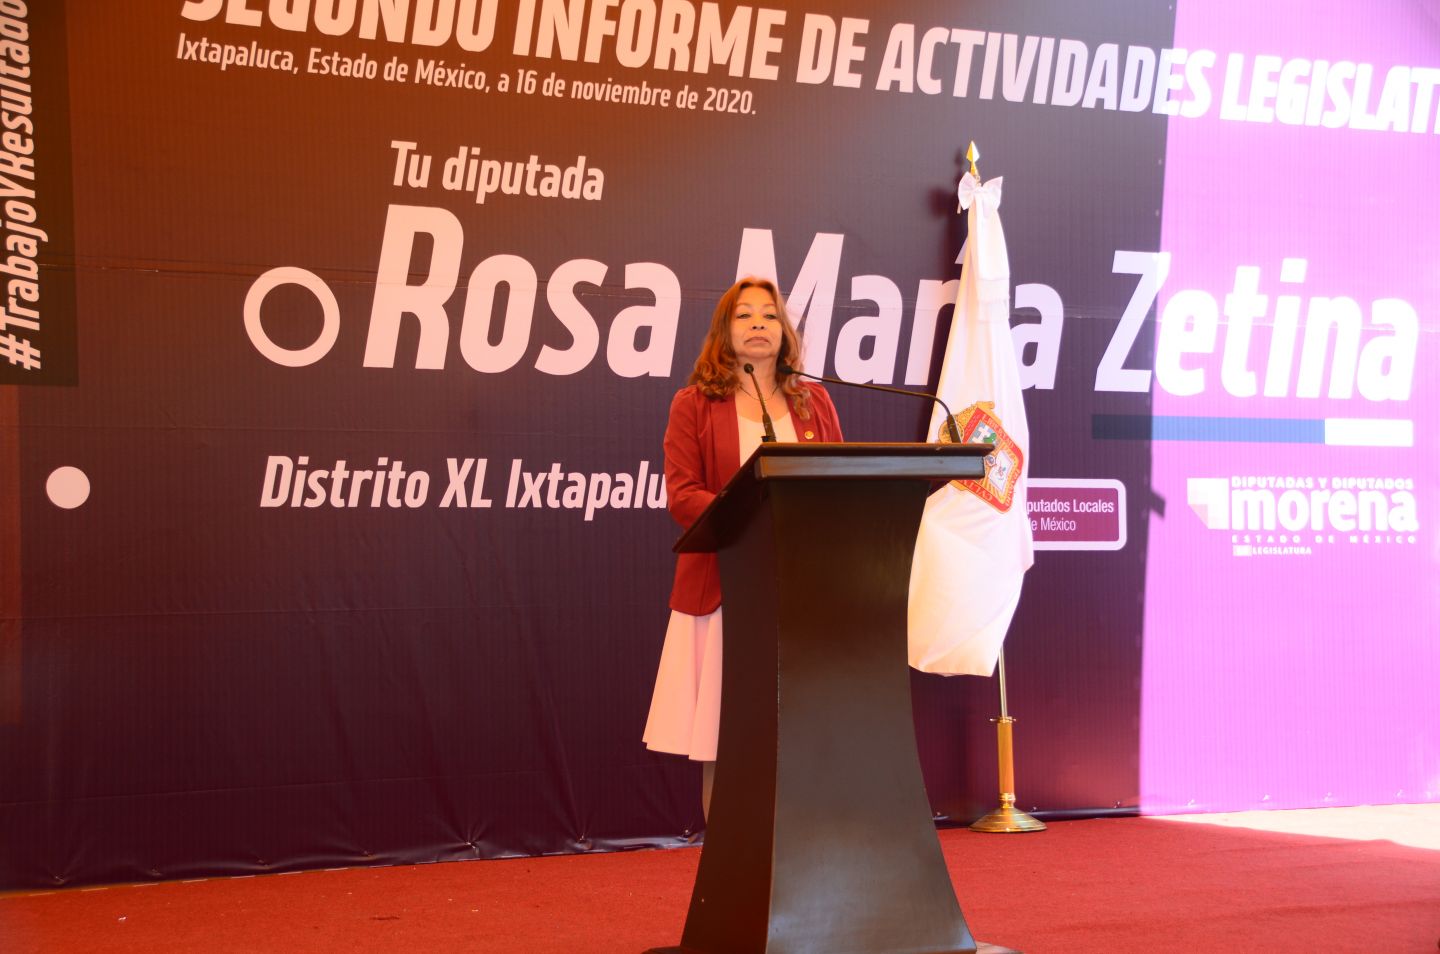 Diputada Rosa Maria Zetina G. presenta su segundo informe de actividades legislativas 